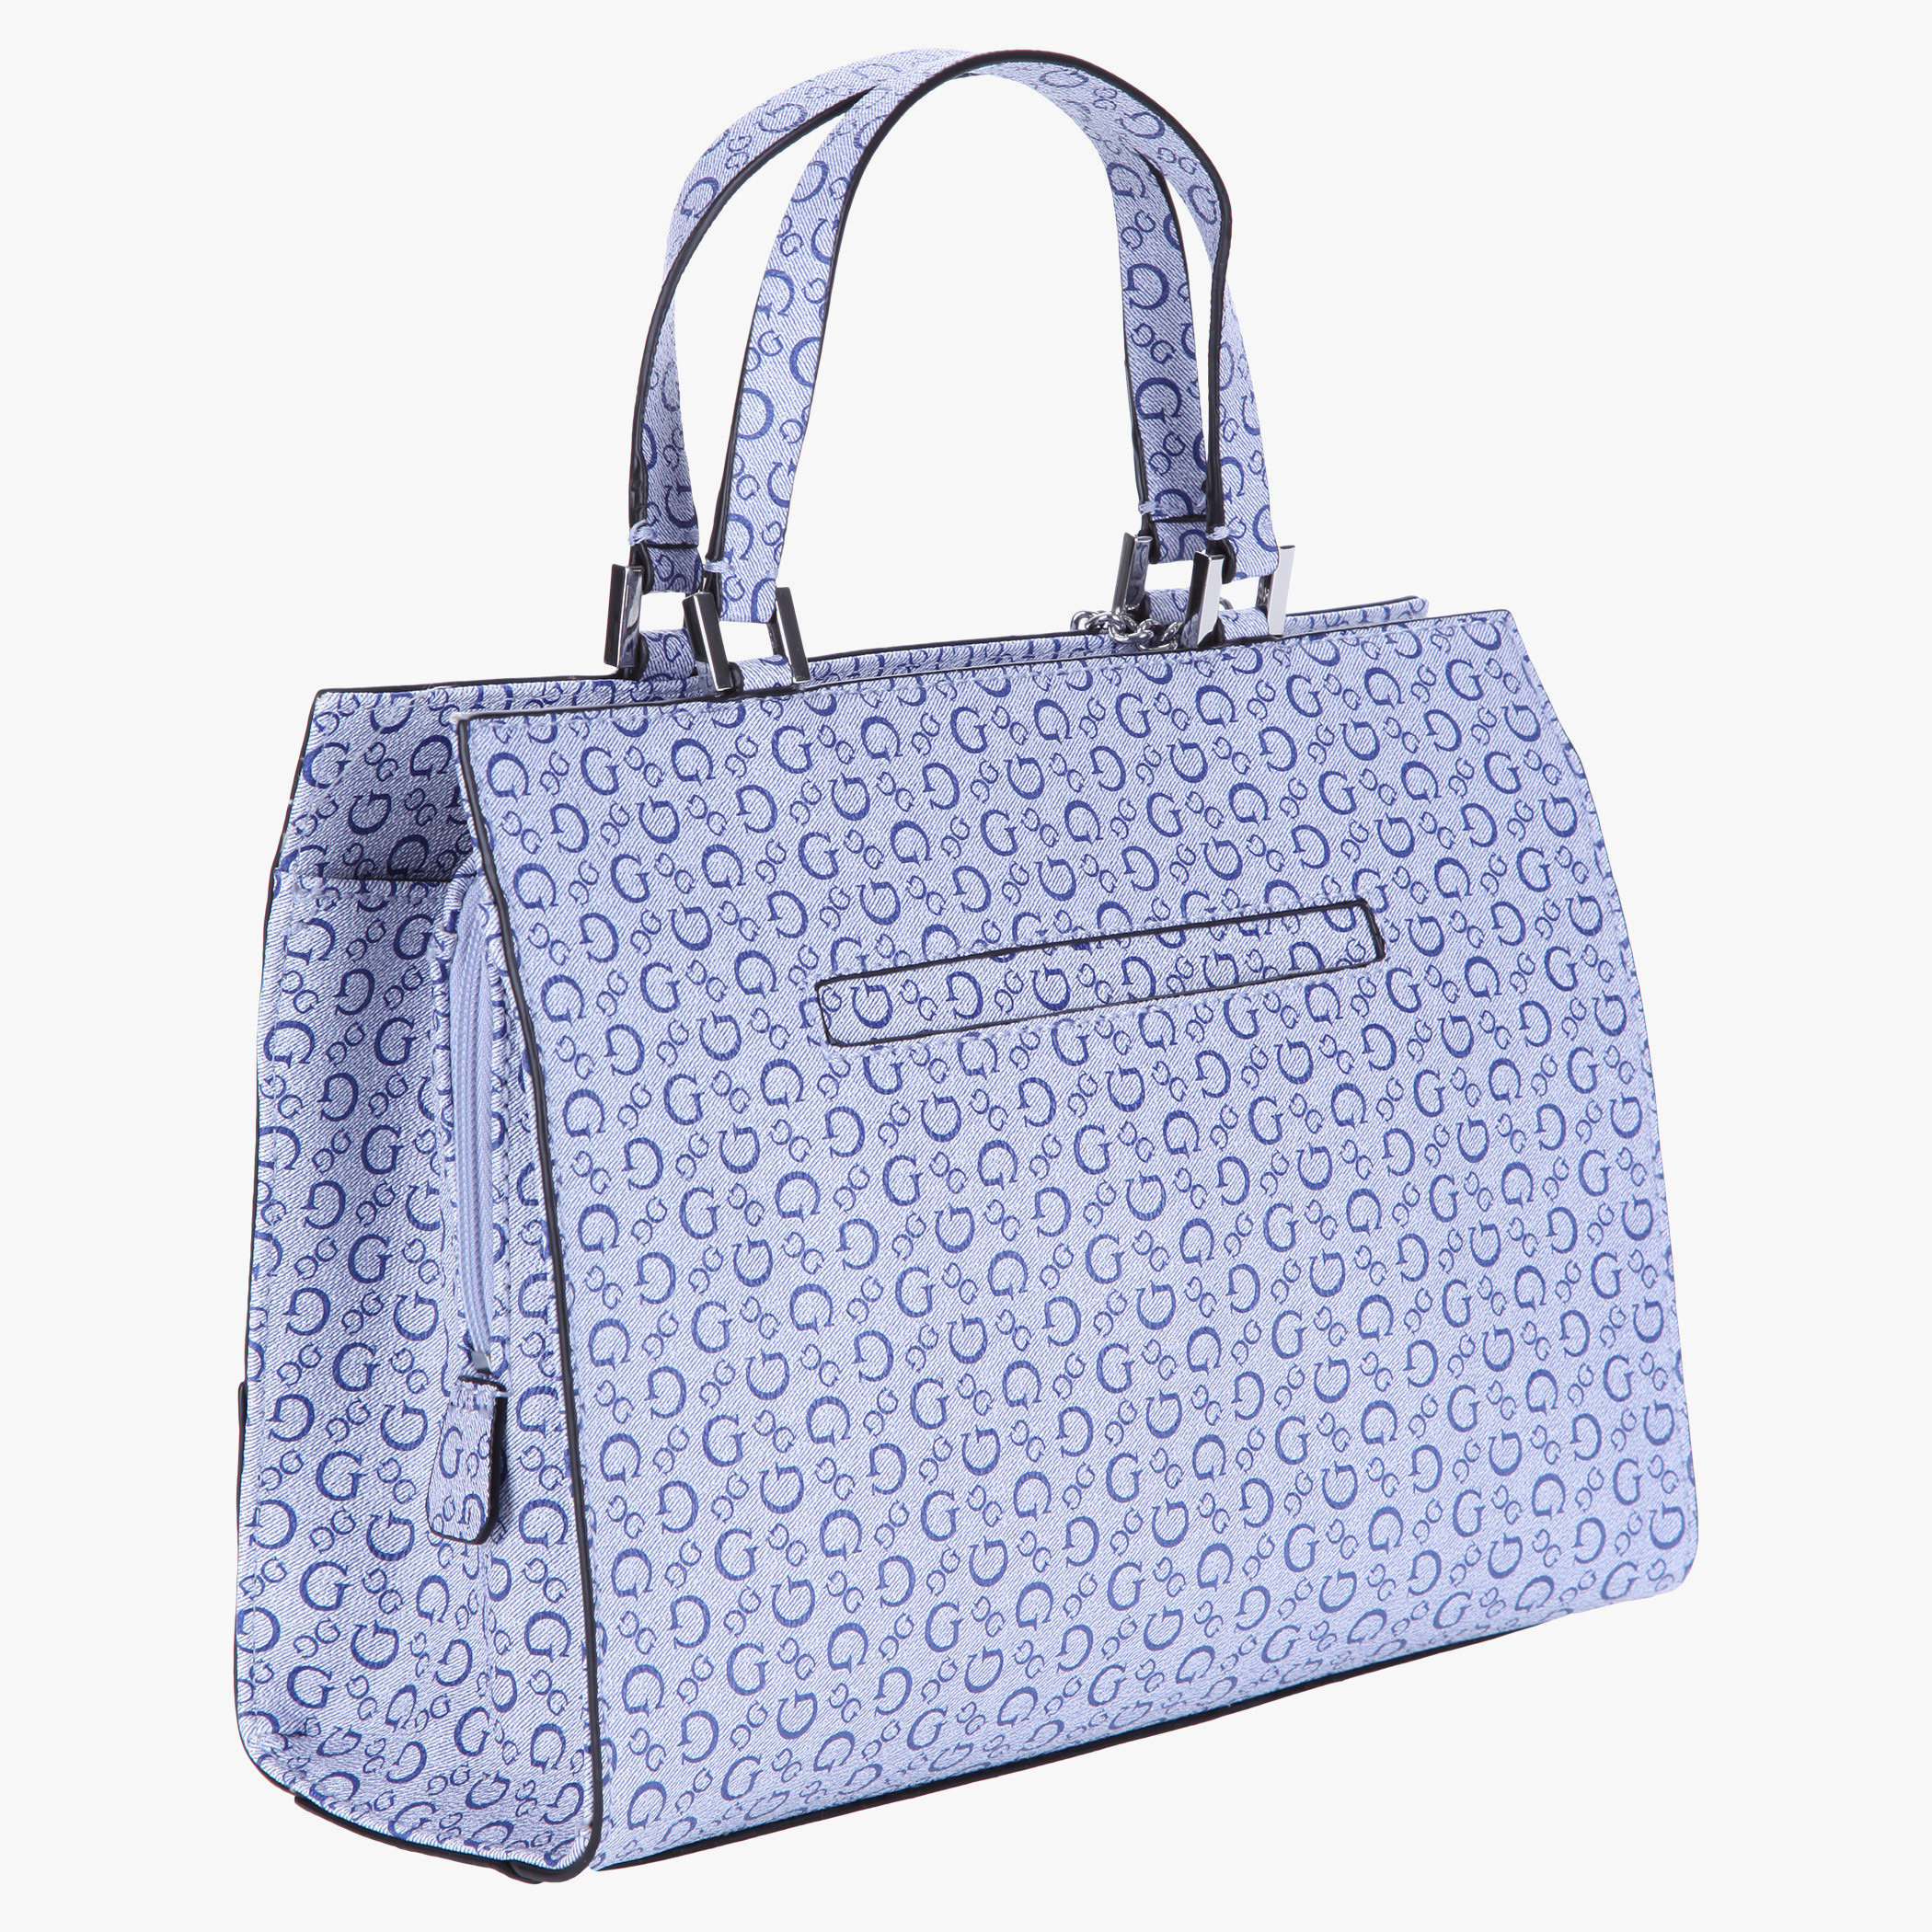 Guess, Oak Park Purse/Handbag, Large, Color Latte, New with Tags | eBay